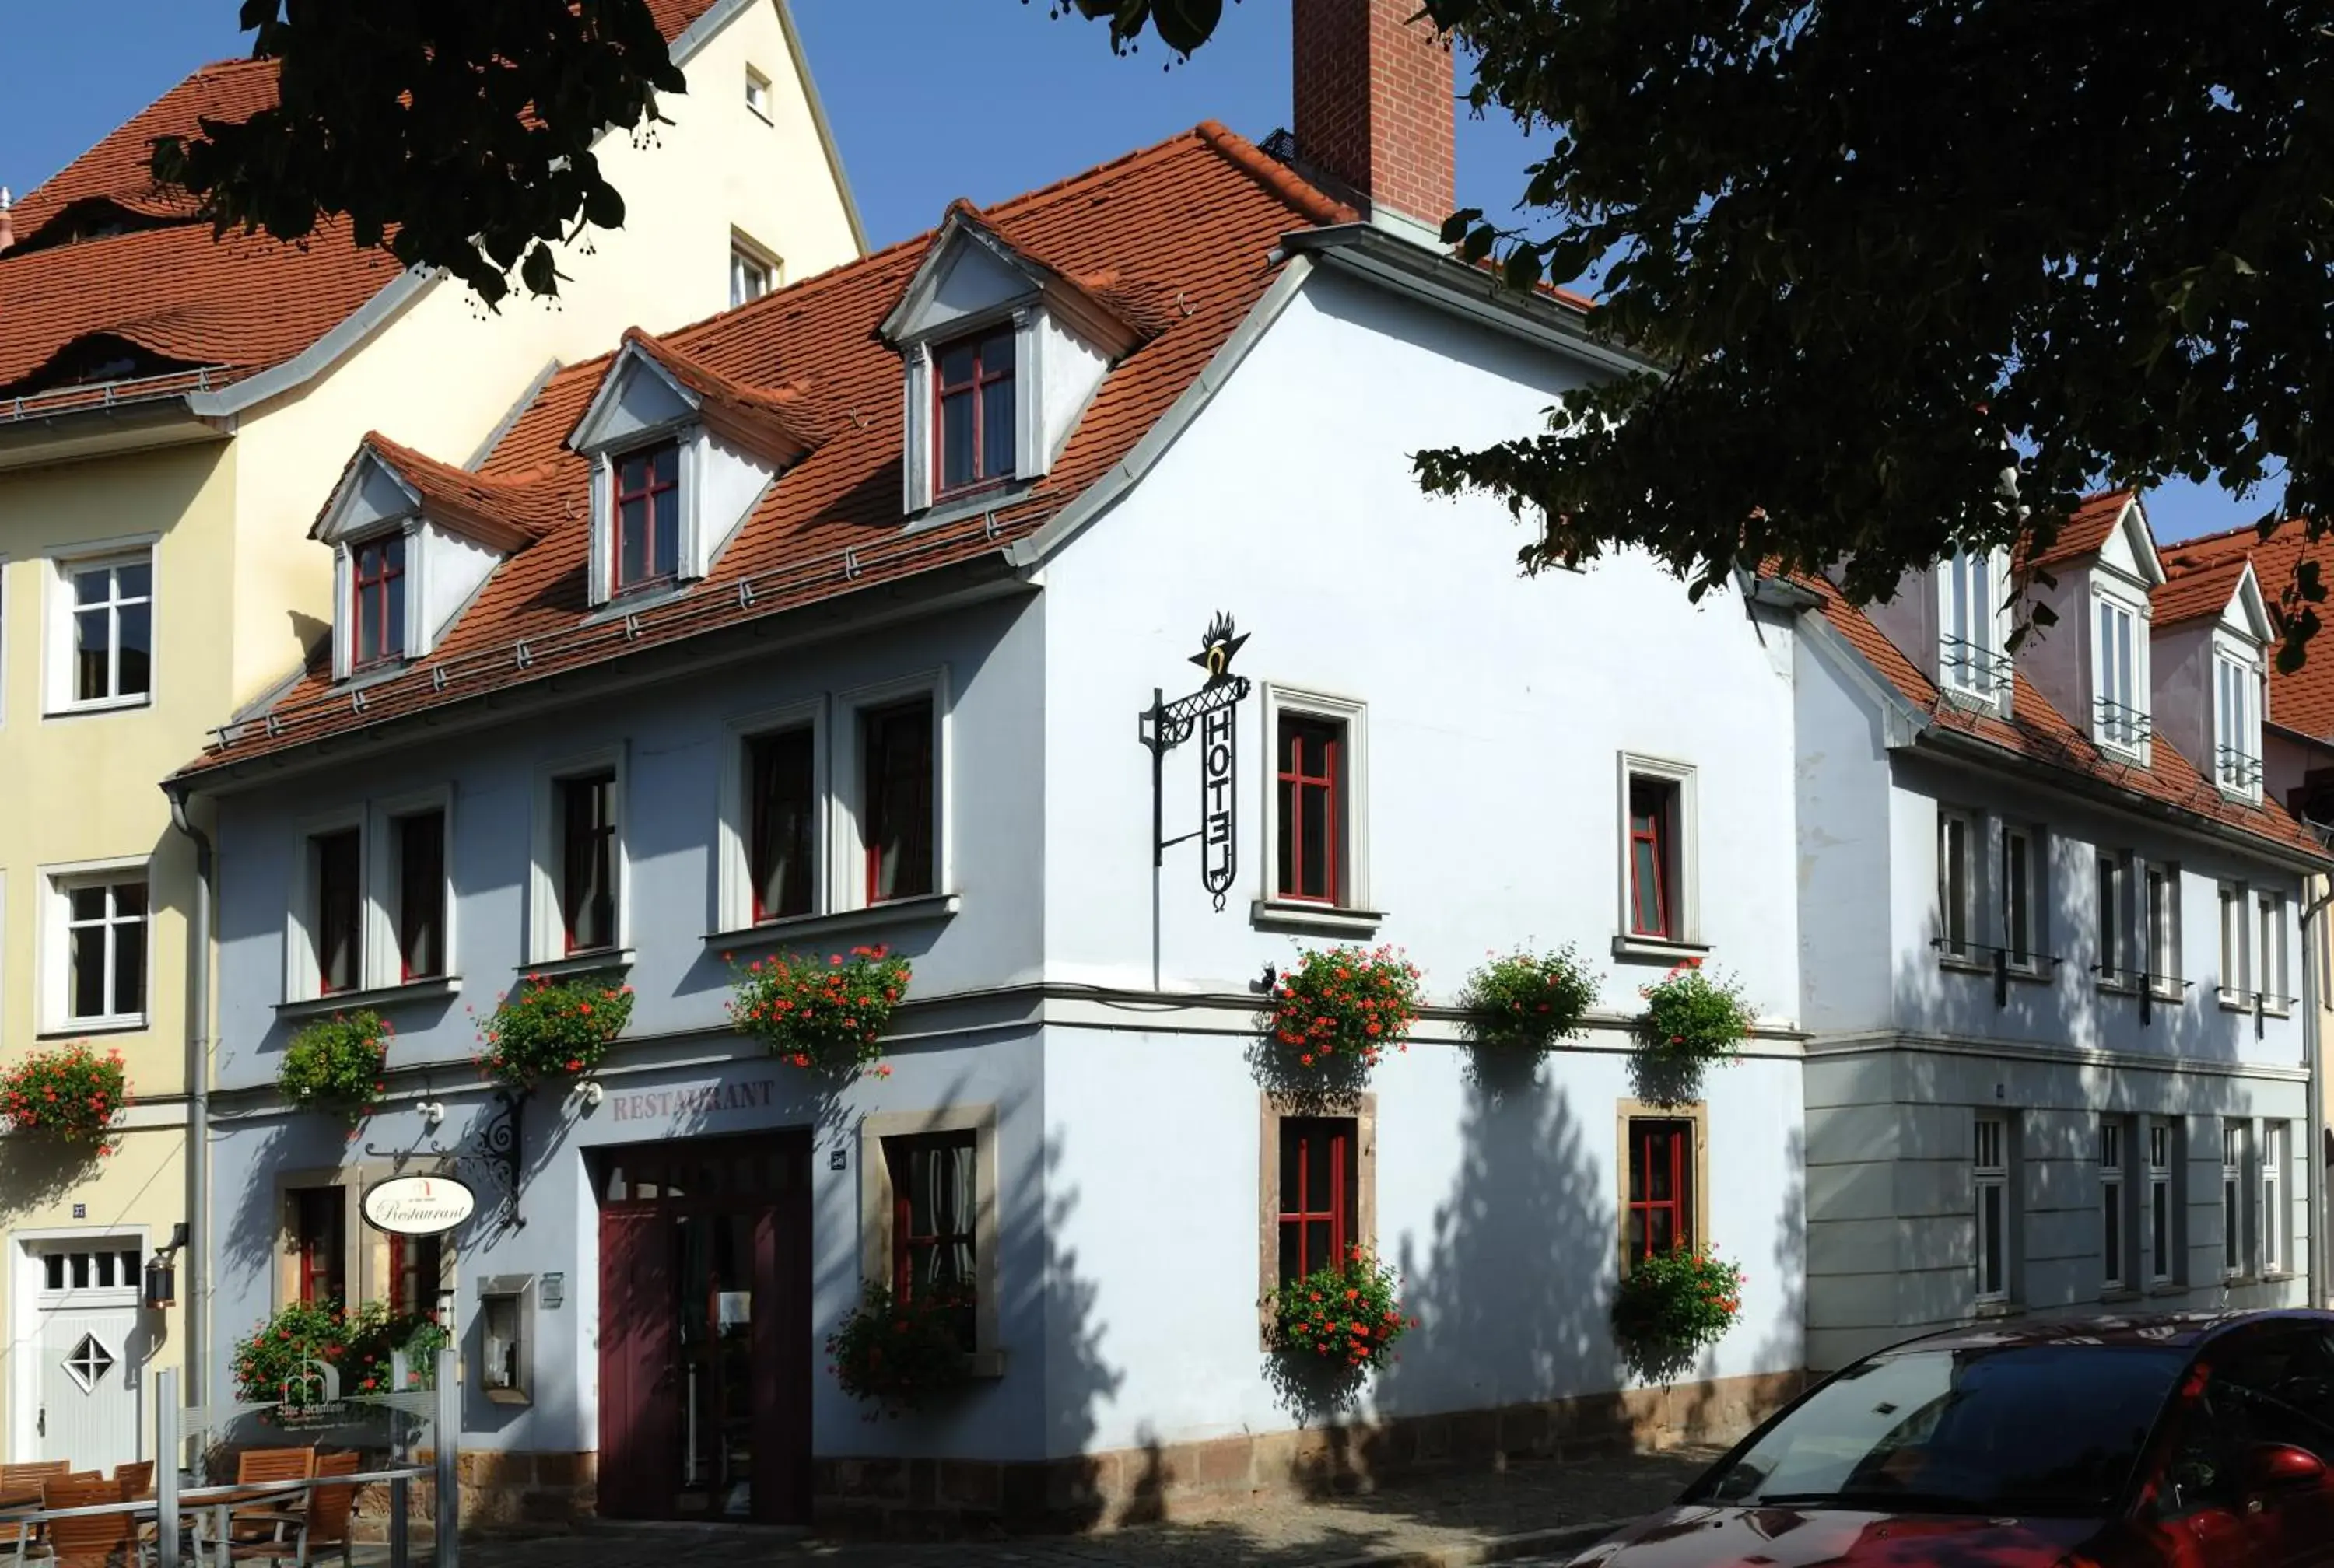 Facade/entrance, Property Building in Zur Alten Schmiede